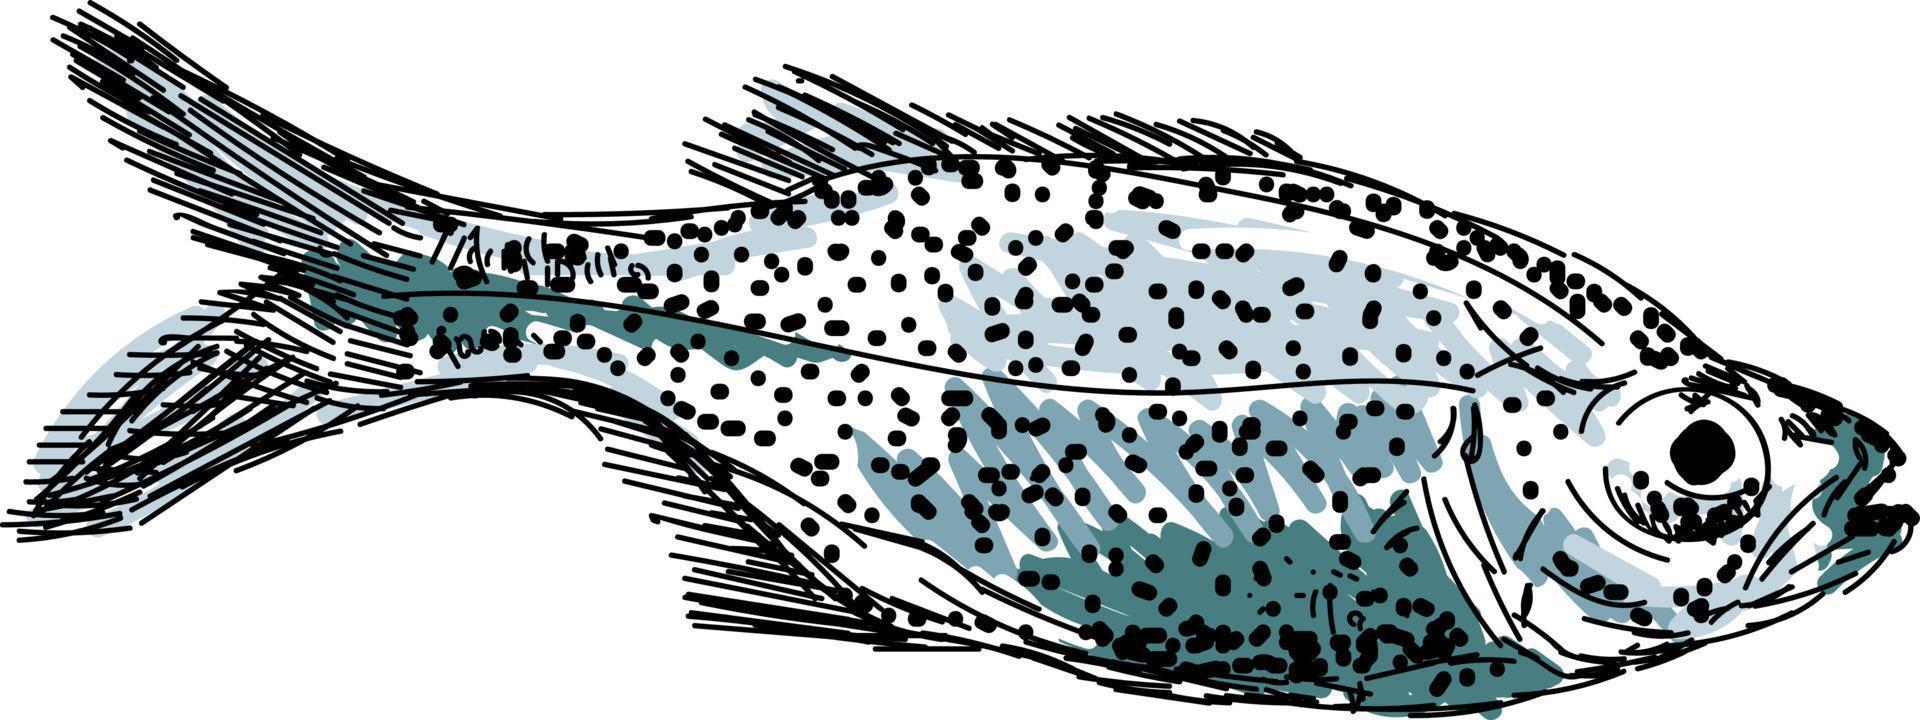 Aholehole fish, ilustración, vector sobre fondo blanco.